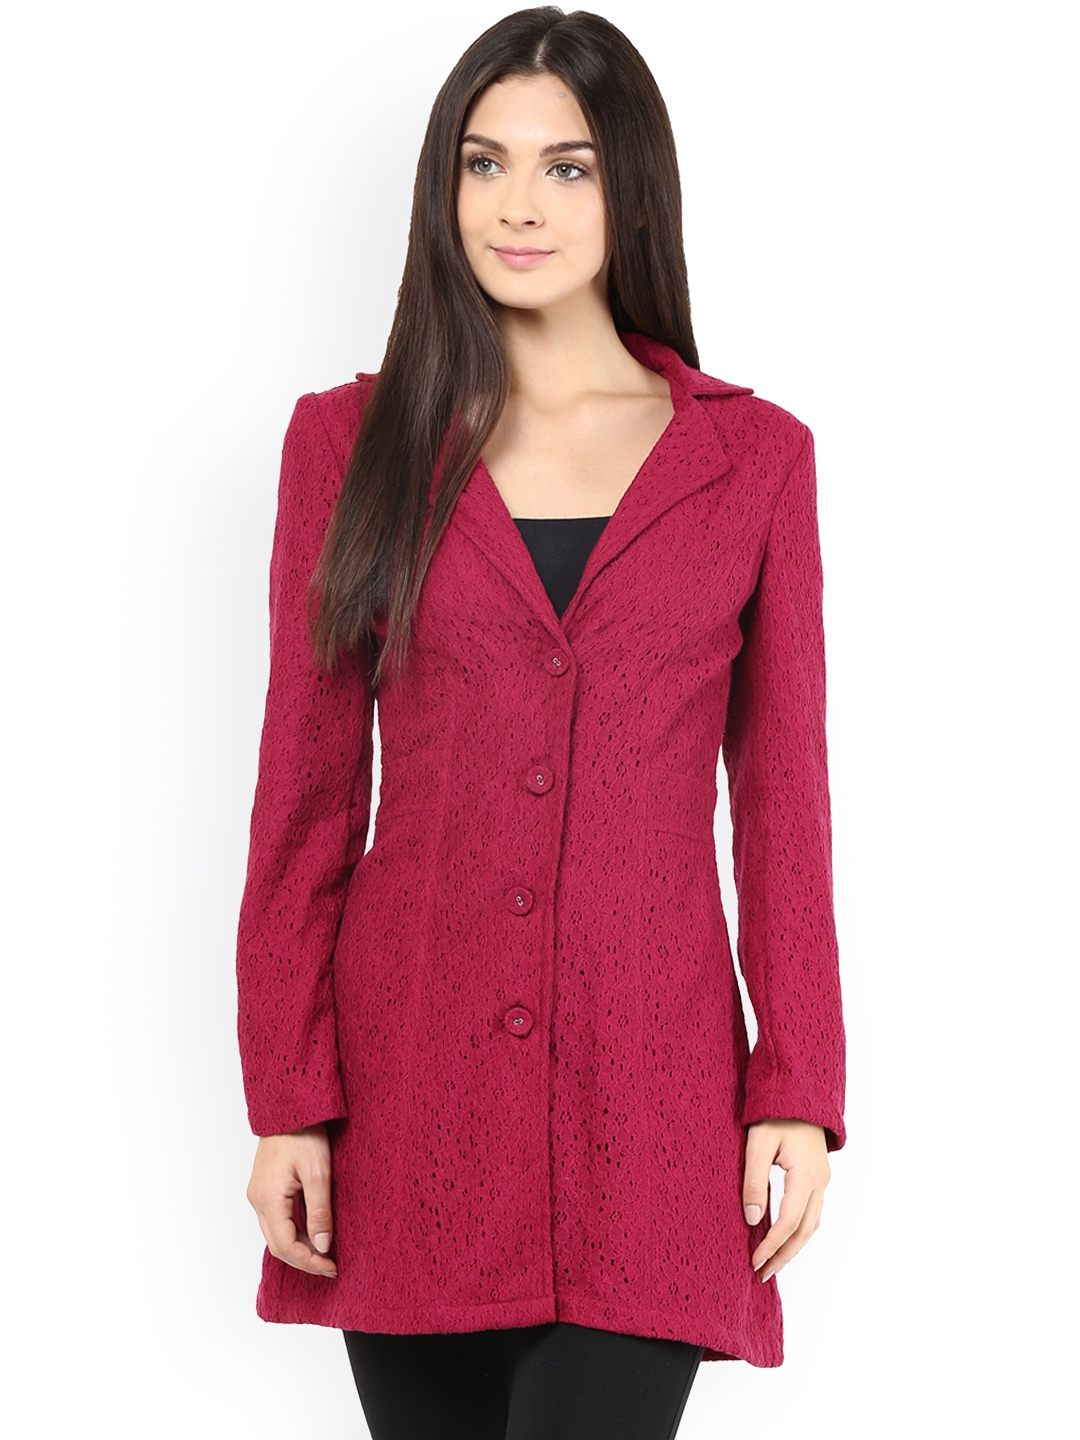 Buy The Vanca Maroon Coat - Coats for Women 1021212 | Myntra